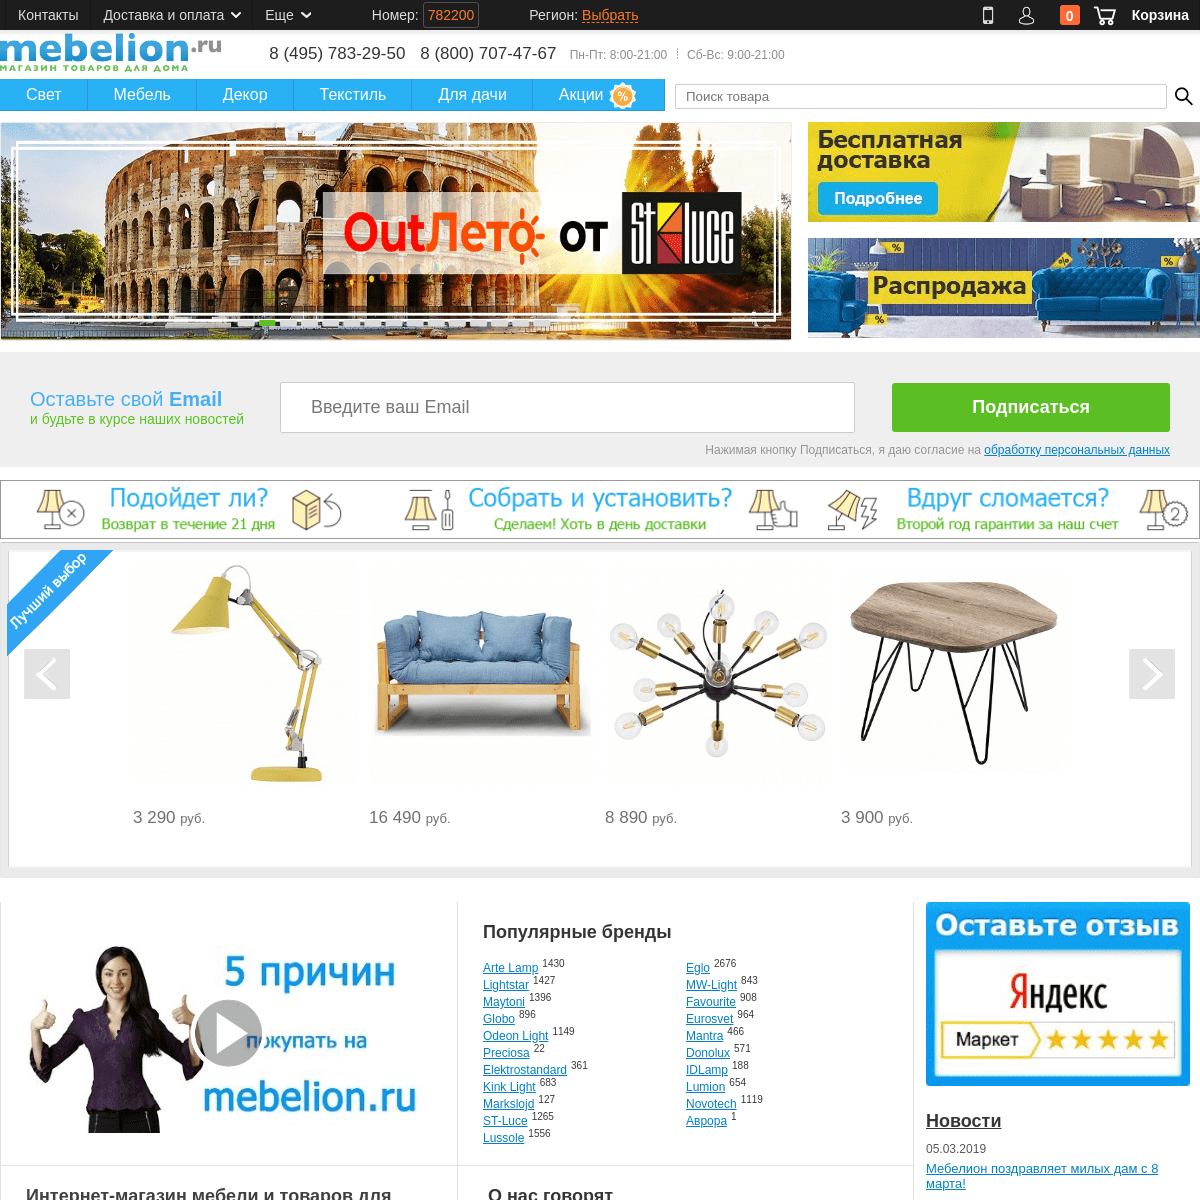 ❤ Интернет-магазин мебели в Москве. Купить мебель в Москве недорого. ☺ Каталог мебели: кровати, диваны, столы, стулья, кресла. М